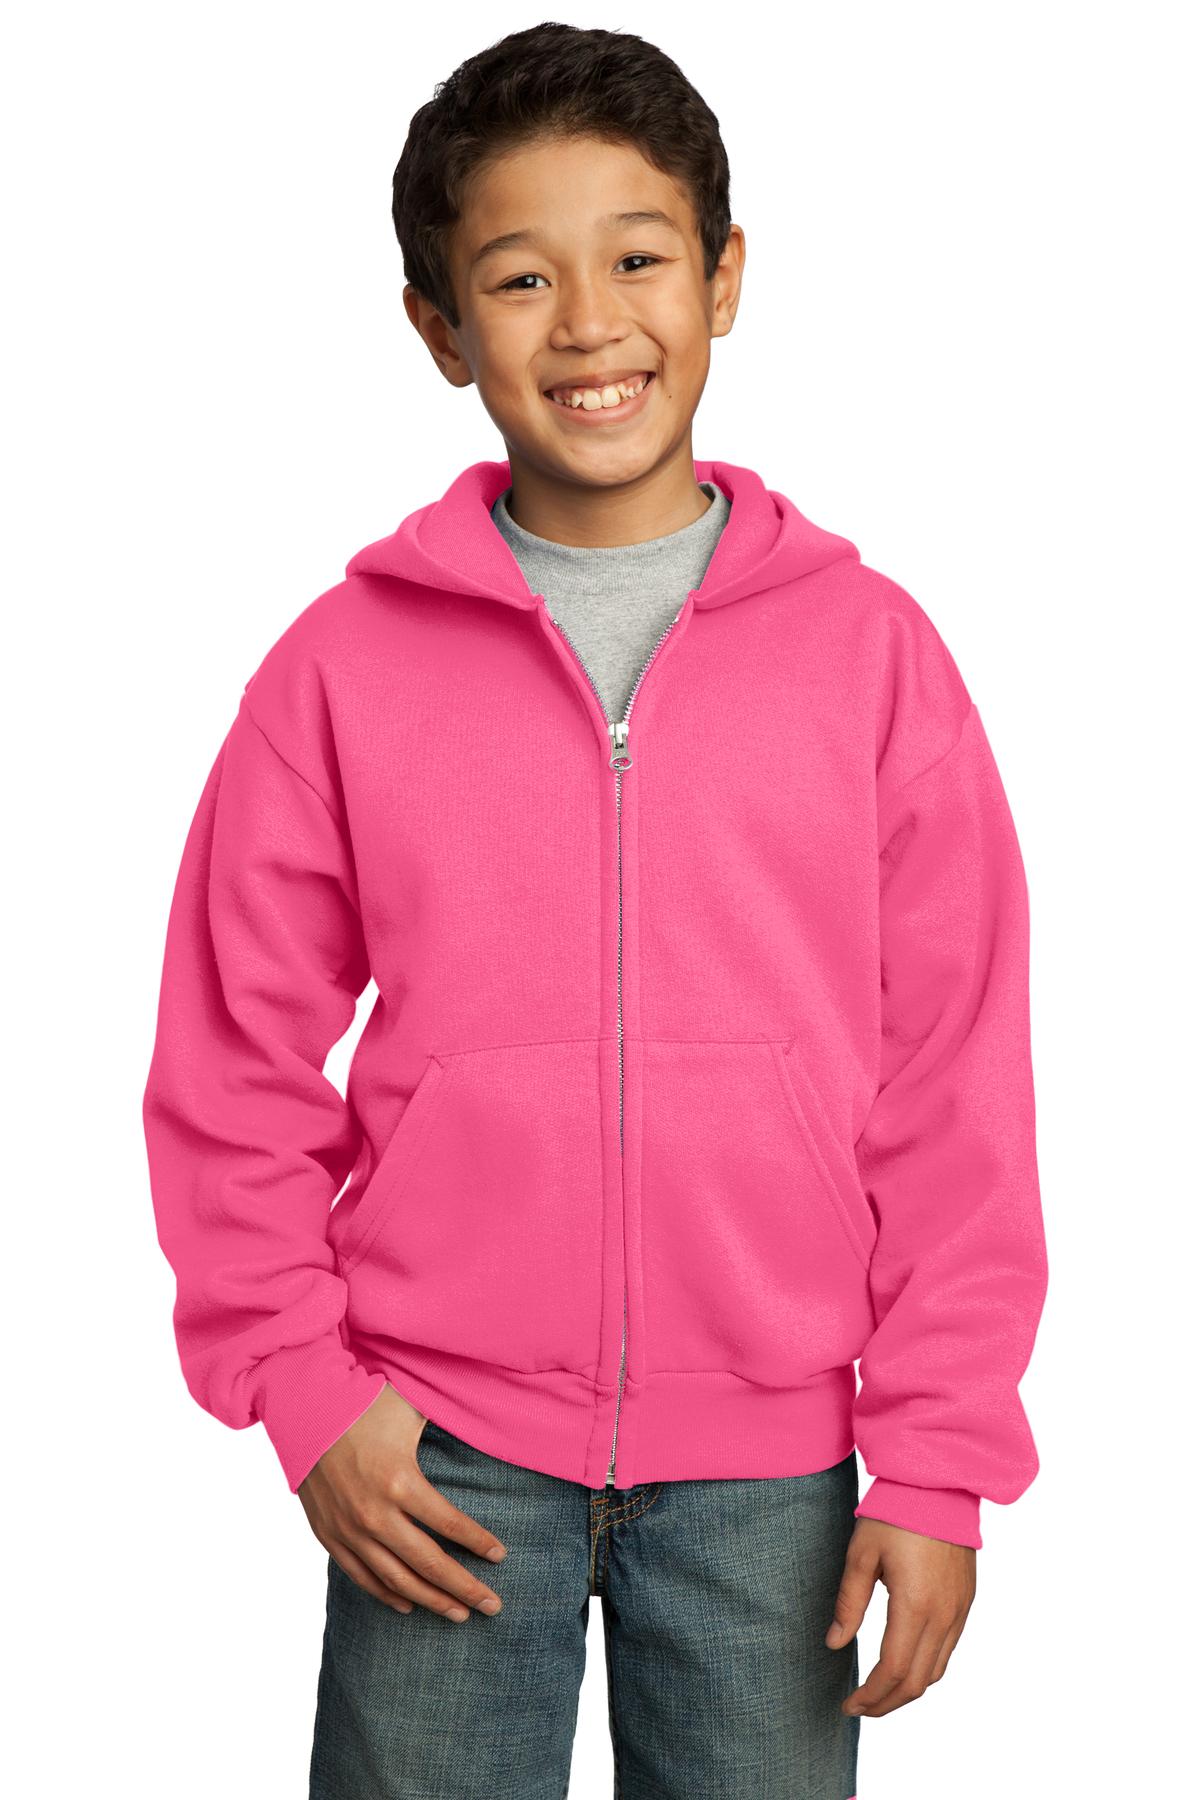 Sweatshirts/Fleece Neon Pink Port & Company